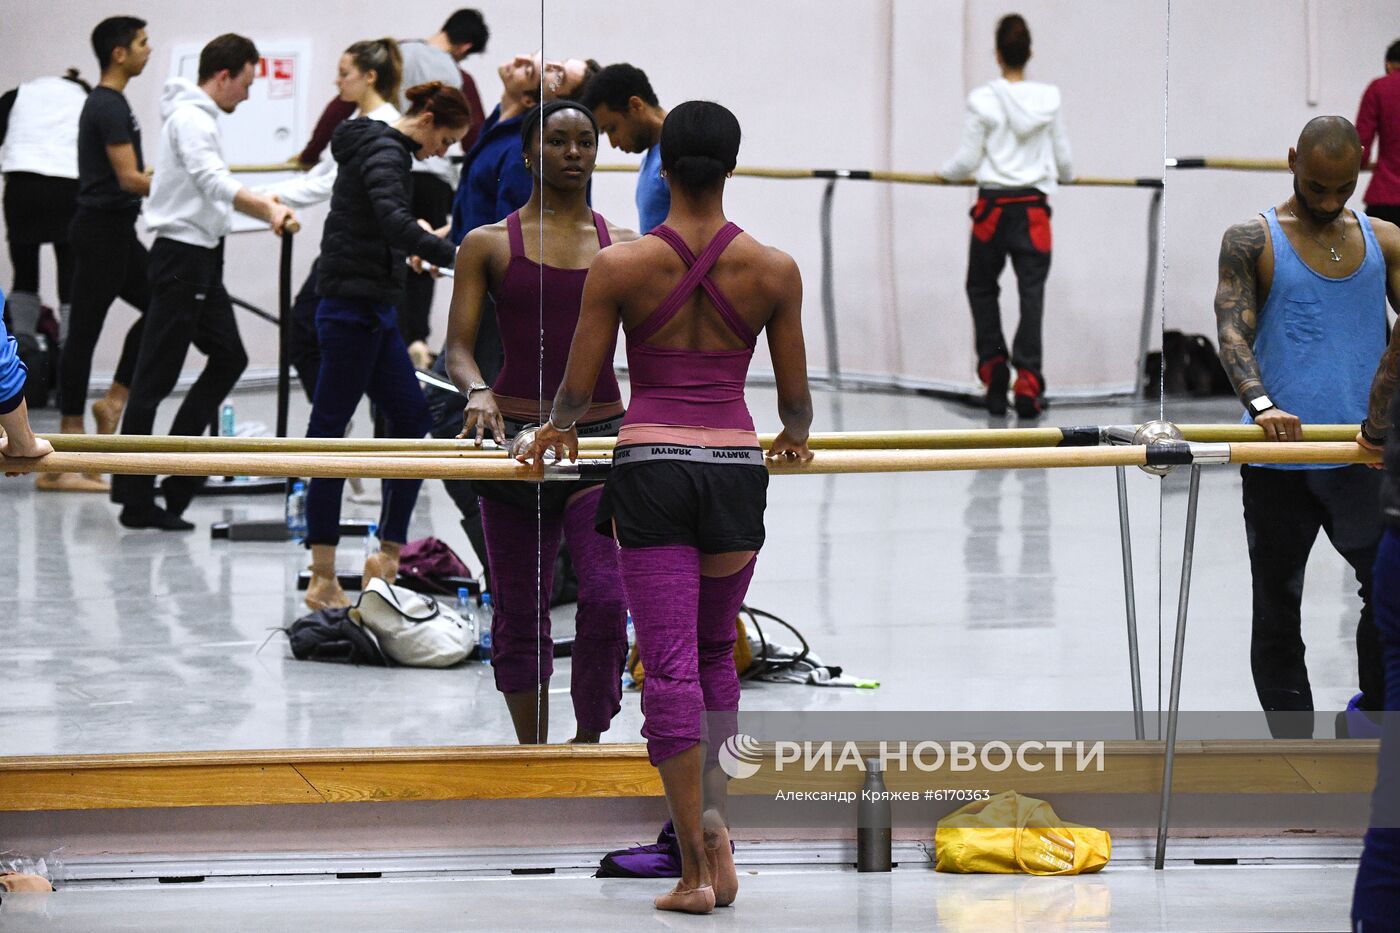 Гастроли балета Монте-Карло в Новосибирске 